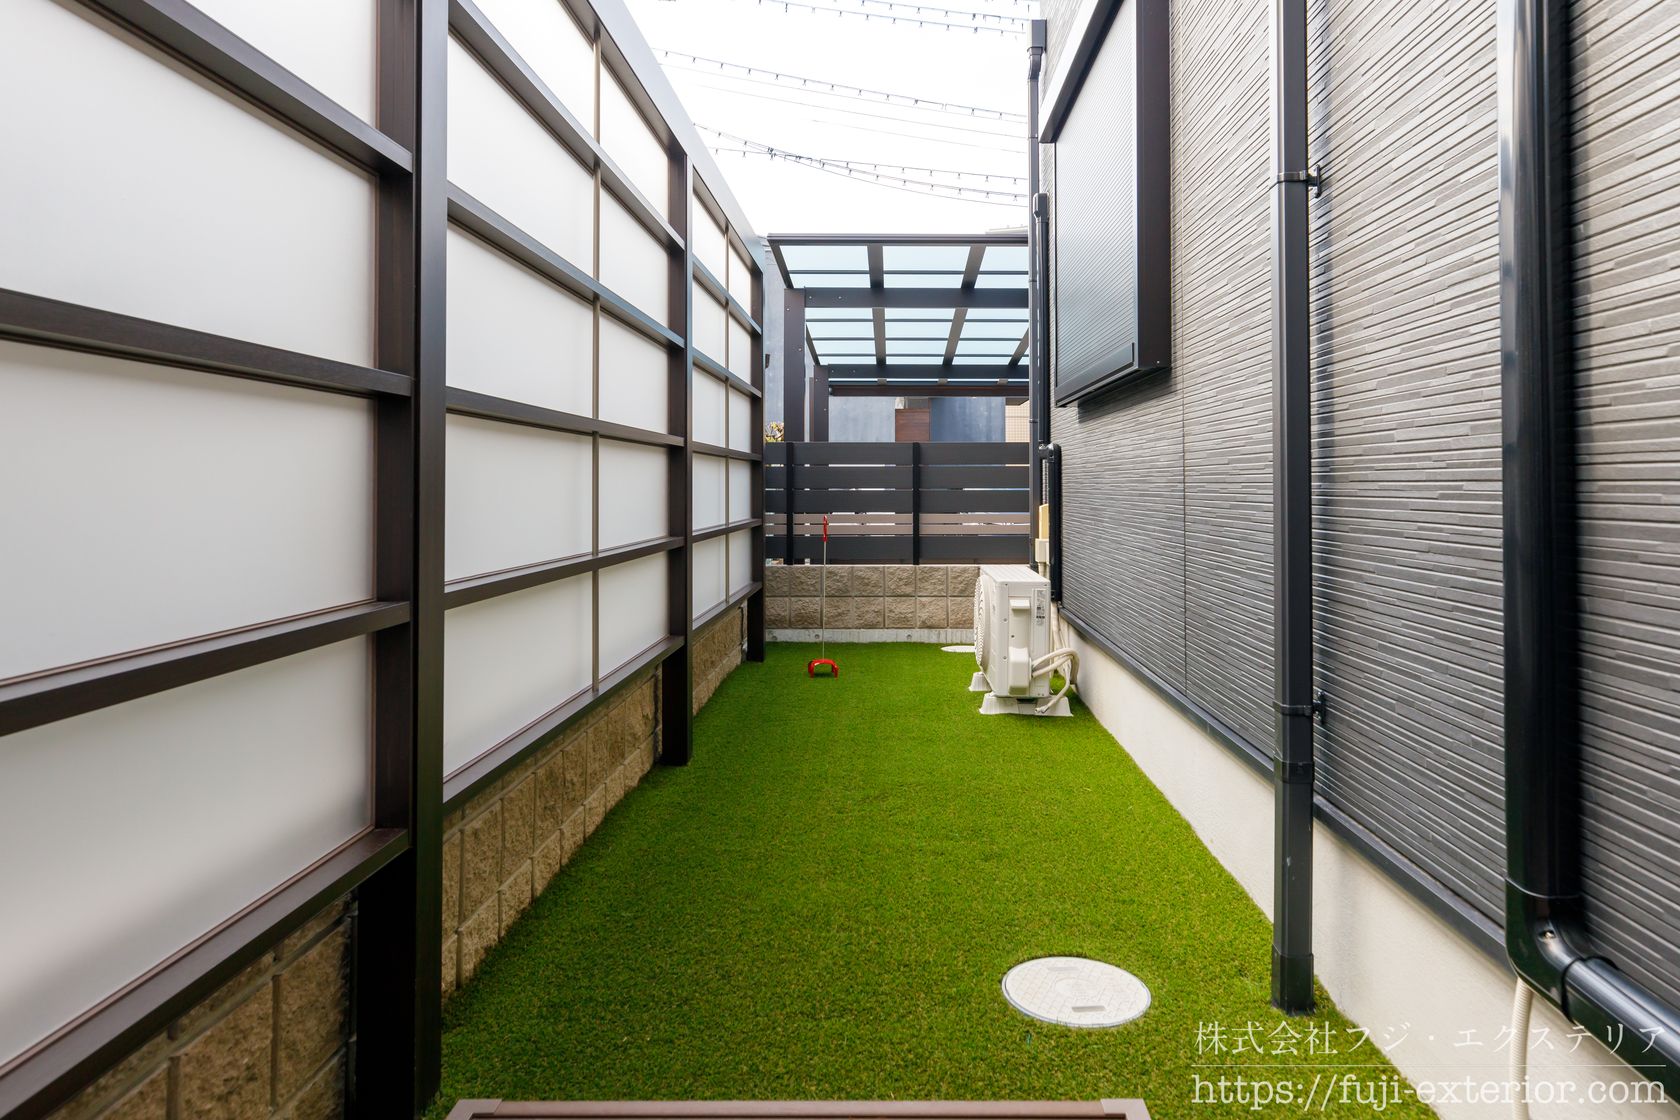 裏庭のリフォーム施工事例。人工芝 + 目隠しフェンスでプライベート空間に。